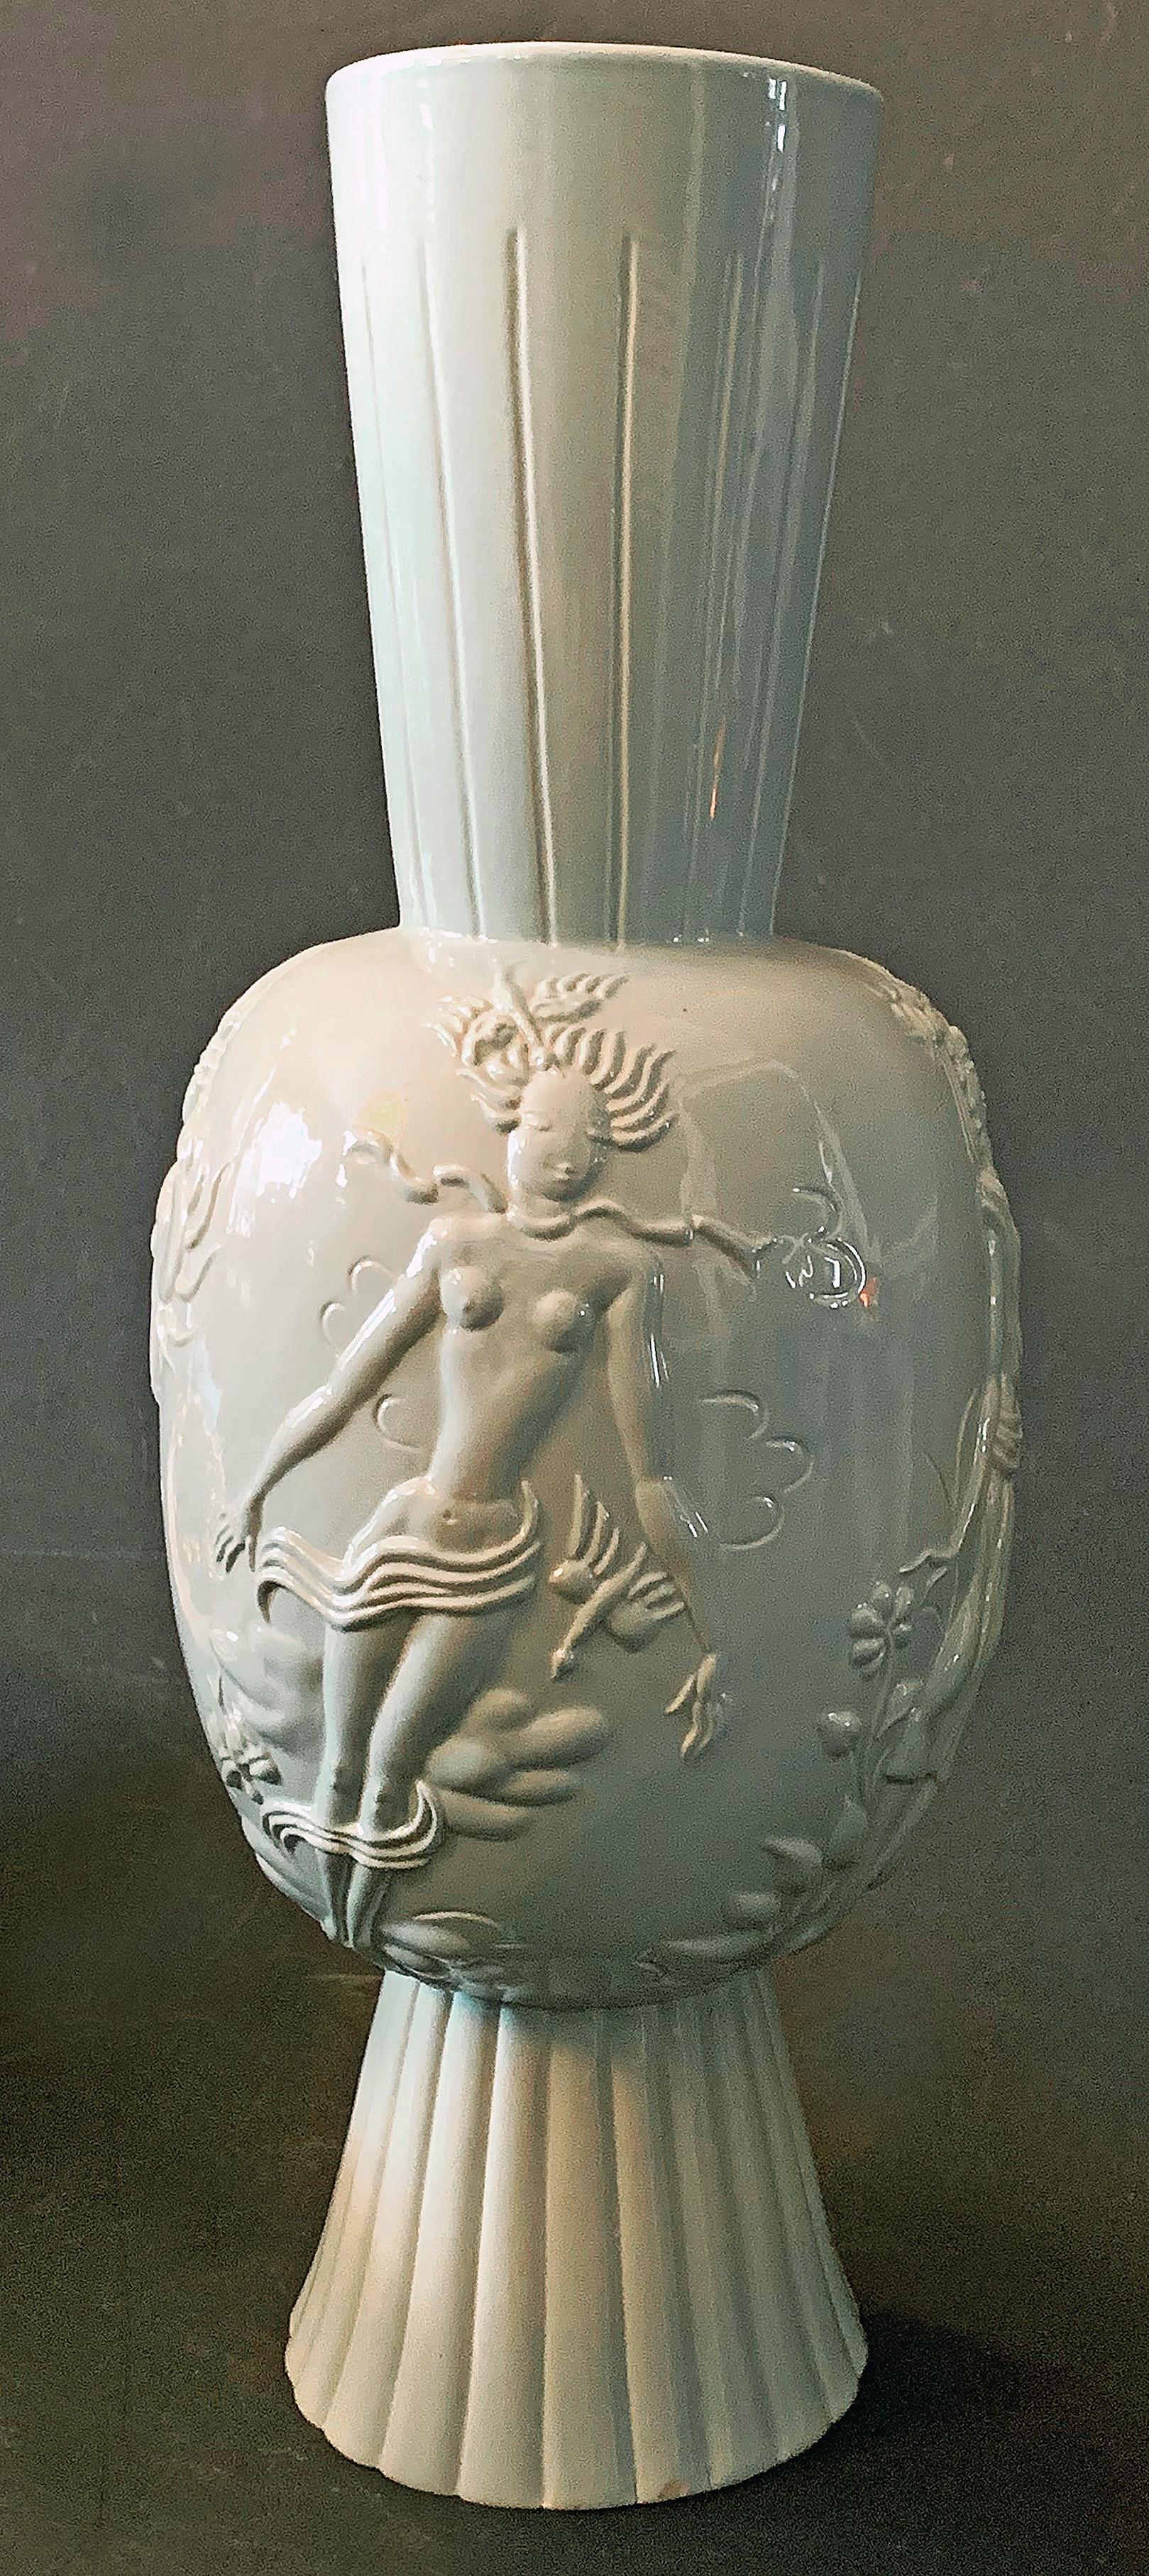 Diese große, außergewöhnliche Vase, die von einer der größten Künstlerinnen der Wiener Werkstätte - Wally (oder Vally) Wieselthier - nach ihrer Emigration nach Amerika geformt, gebrannt und glasiert wurde, stellt die vier Elemente Wasser, Luft,